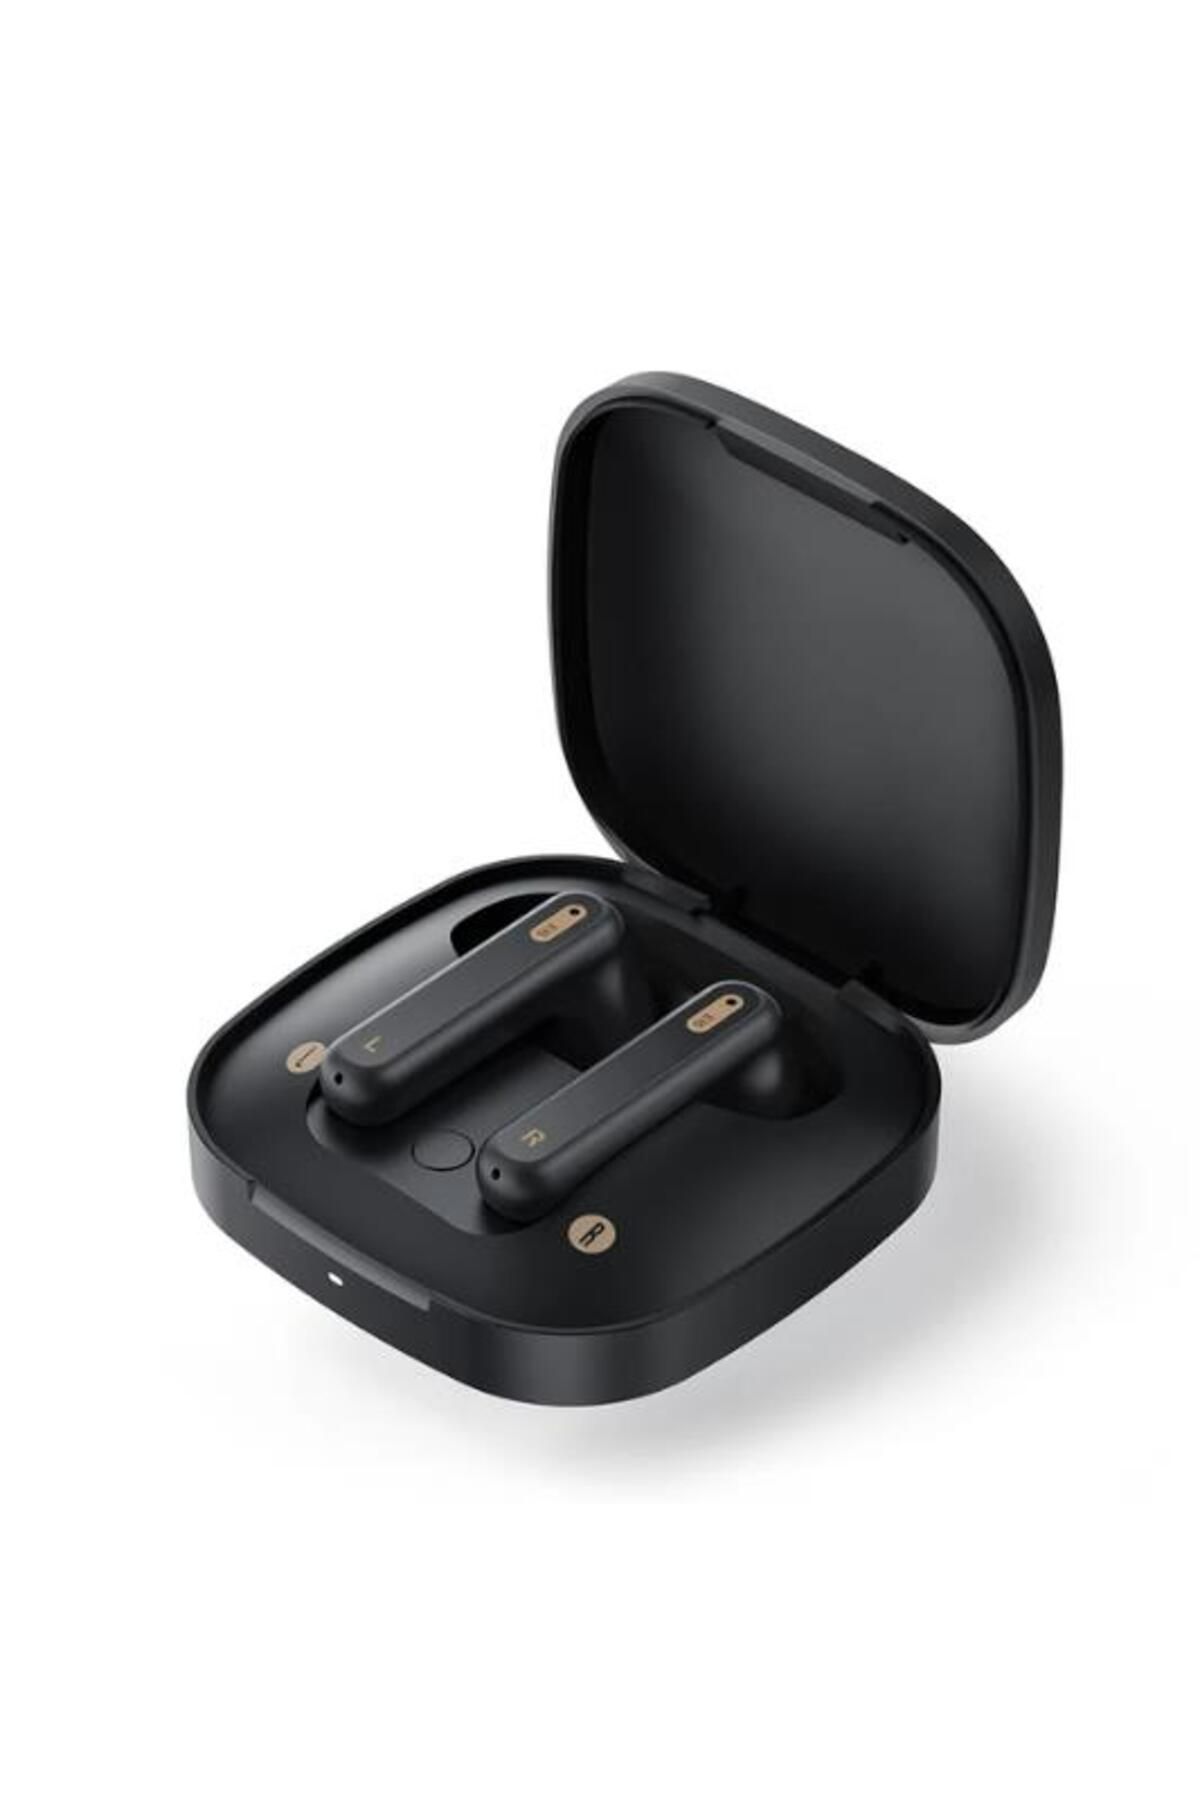 Baseus İPX4 Su Geçirmez BT5.3V Kristal Sesli Mikrofonlu Bluetooth Kulaklık, Uzun Şarjlı 13mm Sürücül